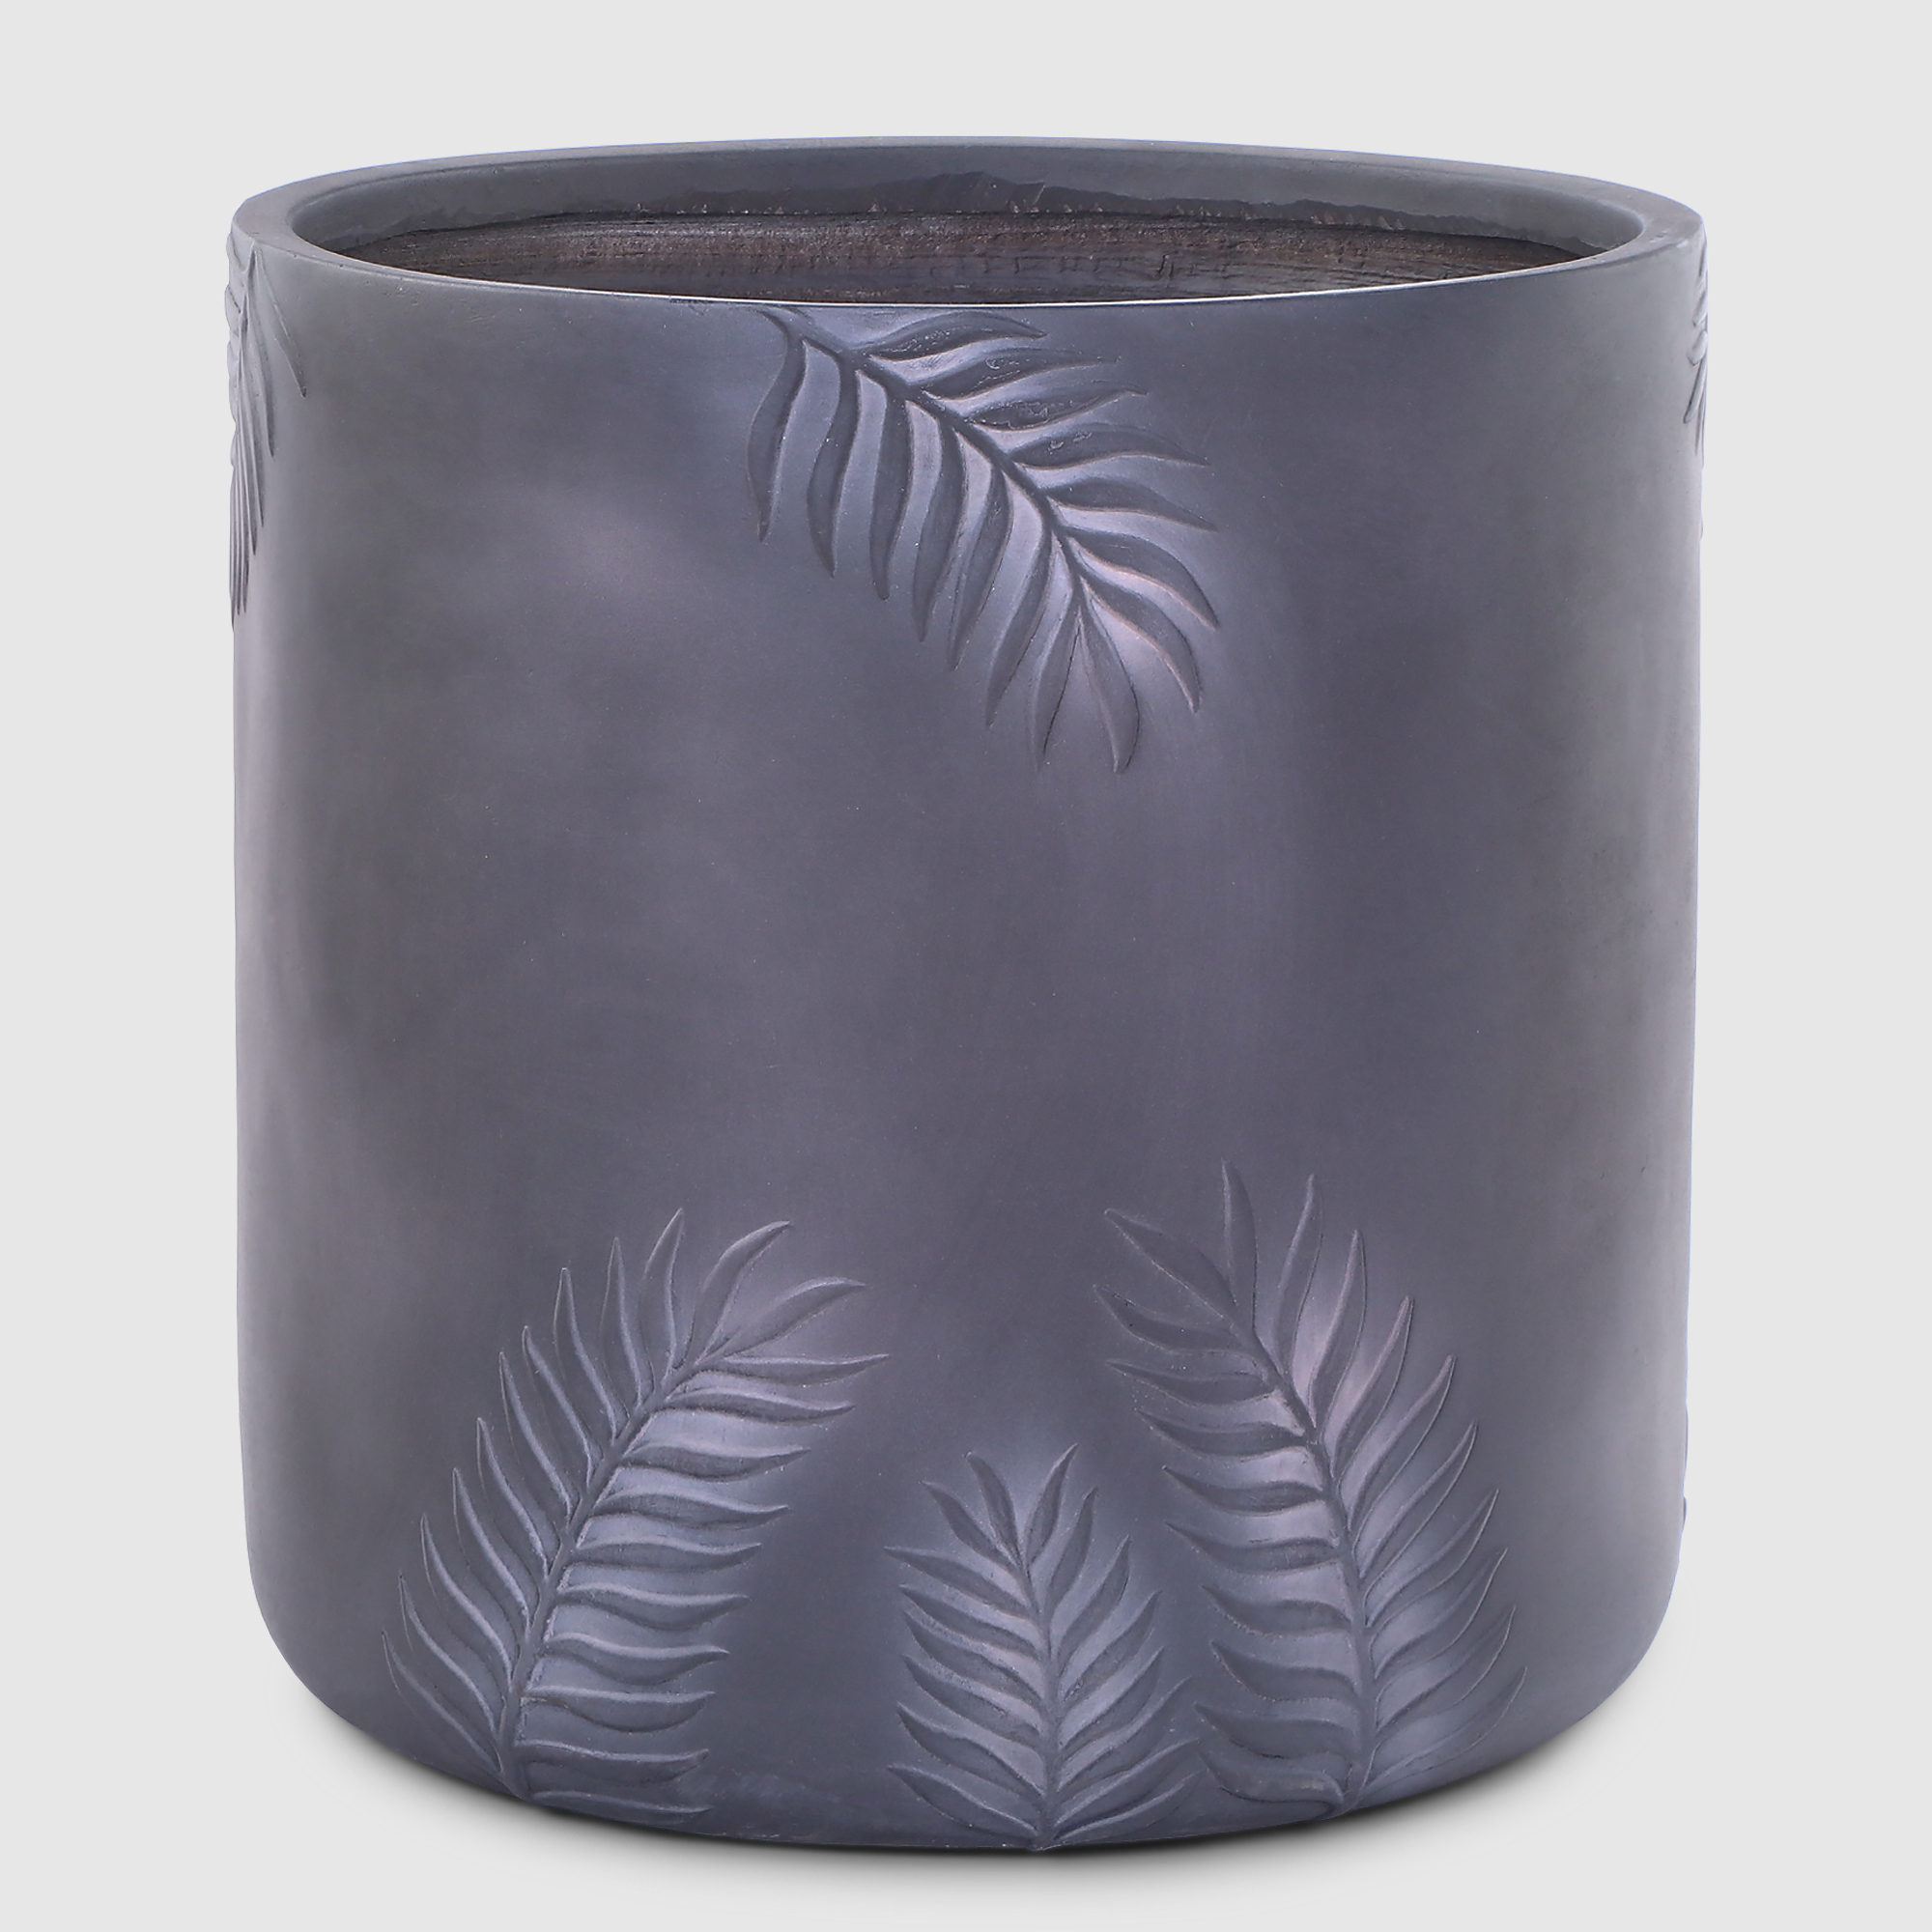 Горшок для цветов L&t pottery цилиндр антик коричневый D44 горшок с поддоном гончар паутинка 1 d31 v12л коричневый